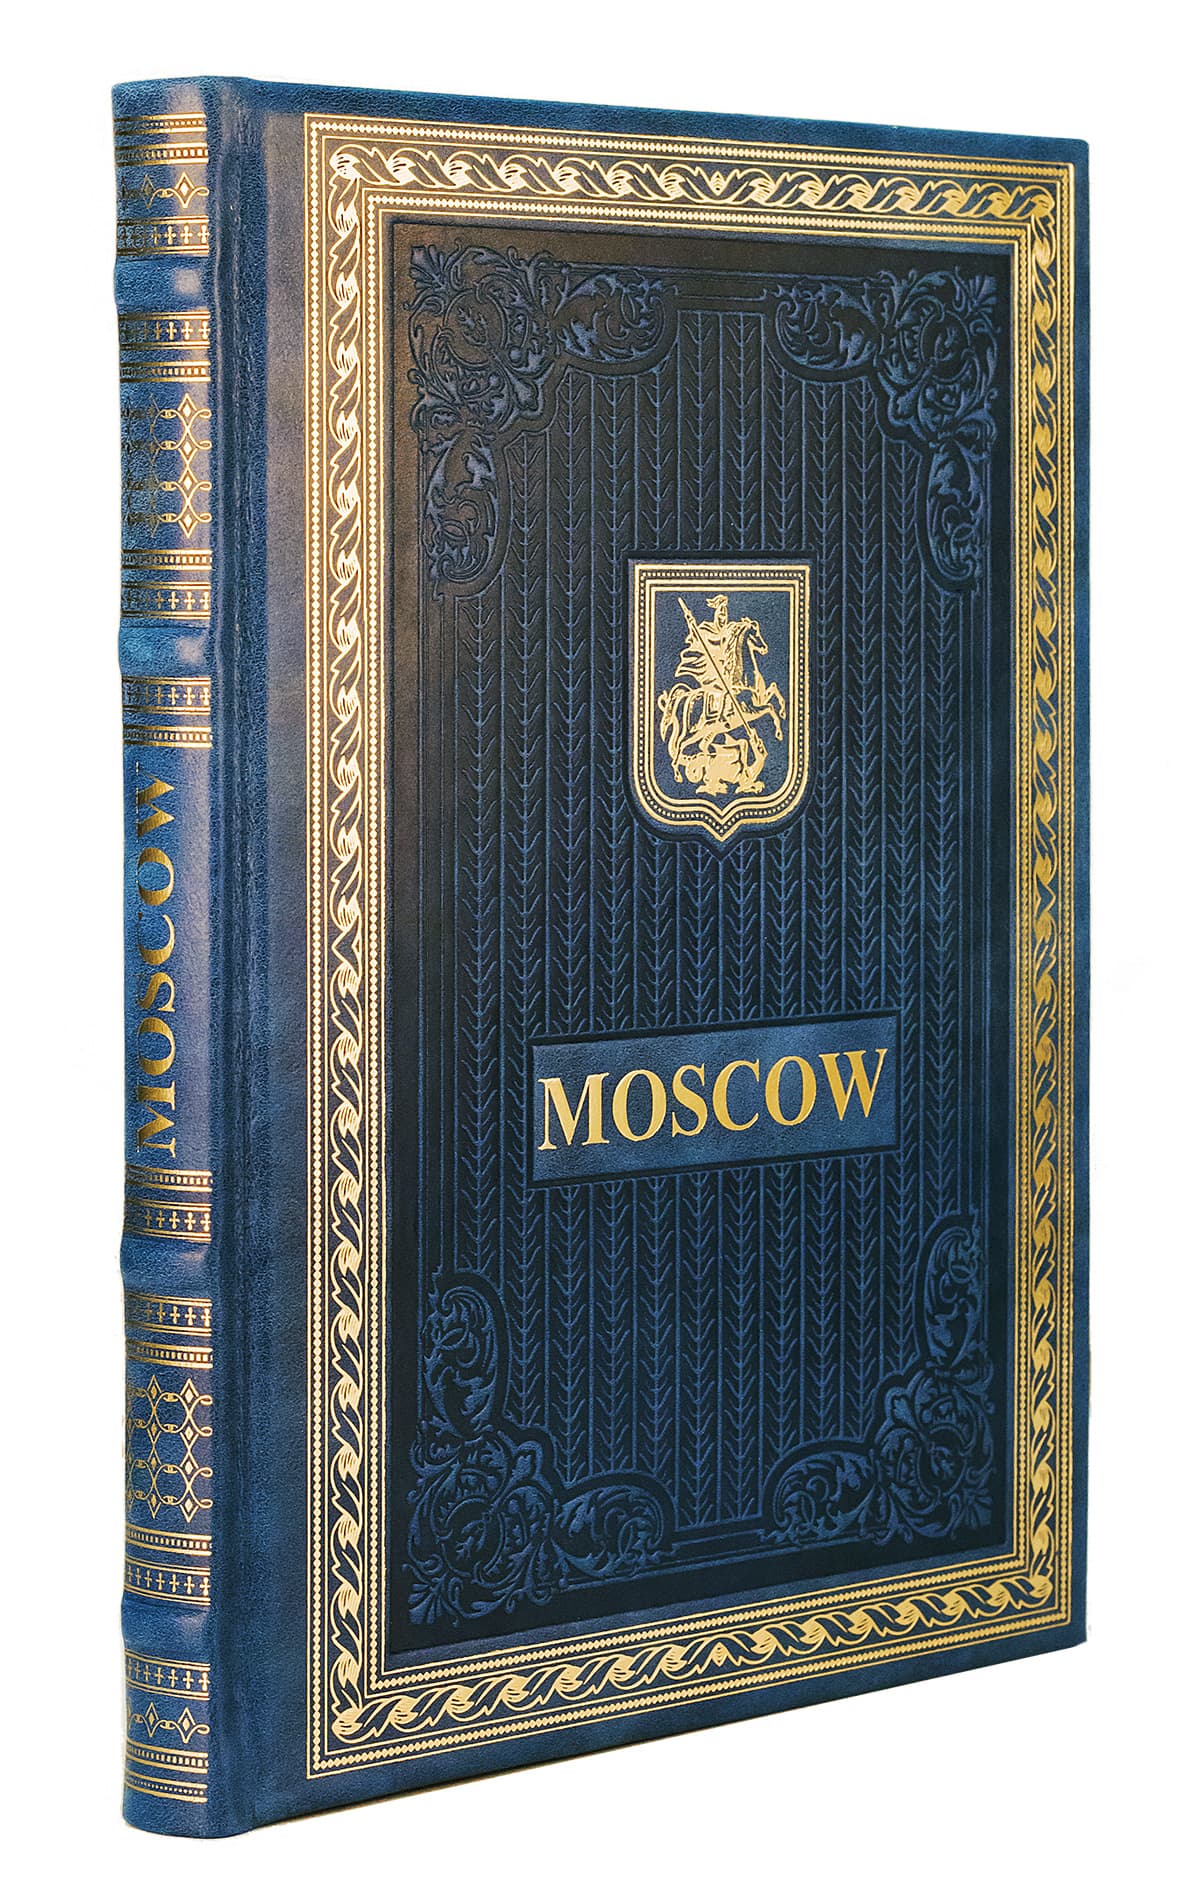 Москва на английском языке (в коробке). Подарочное издание в коже